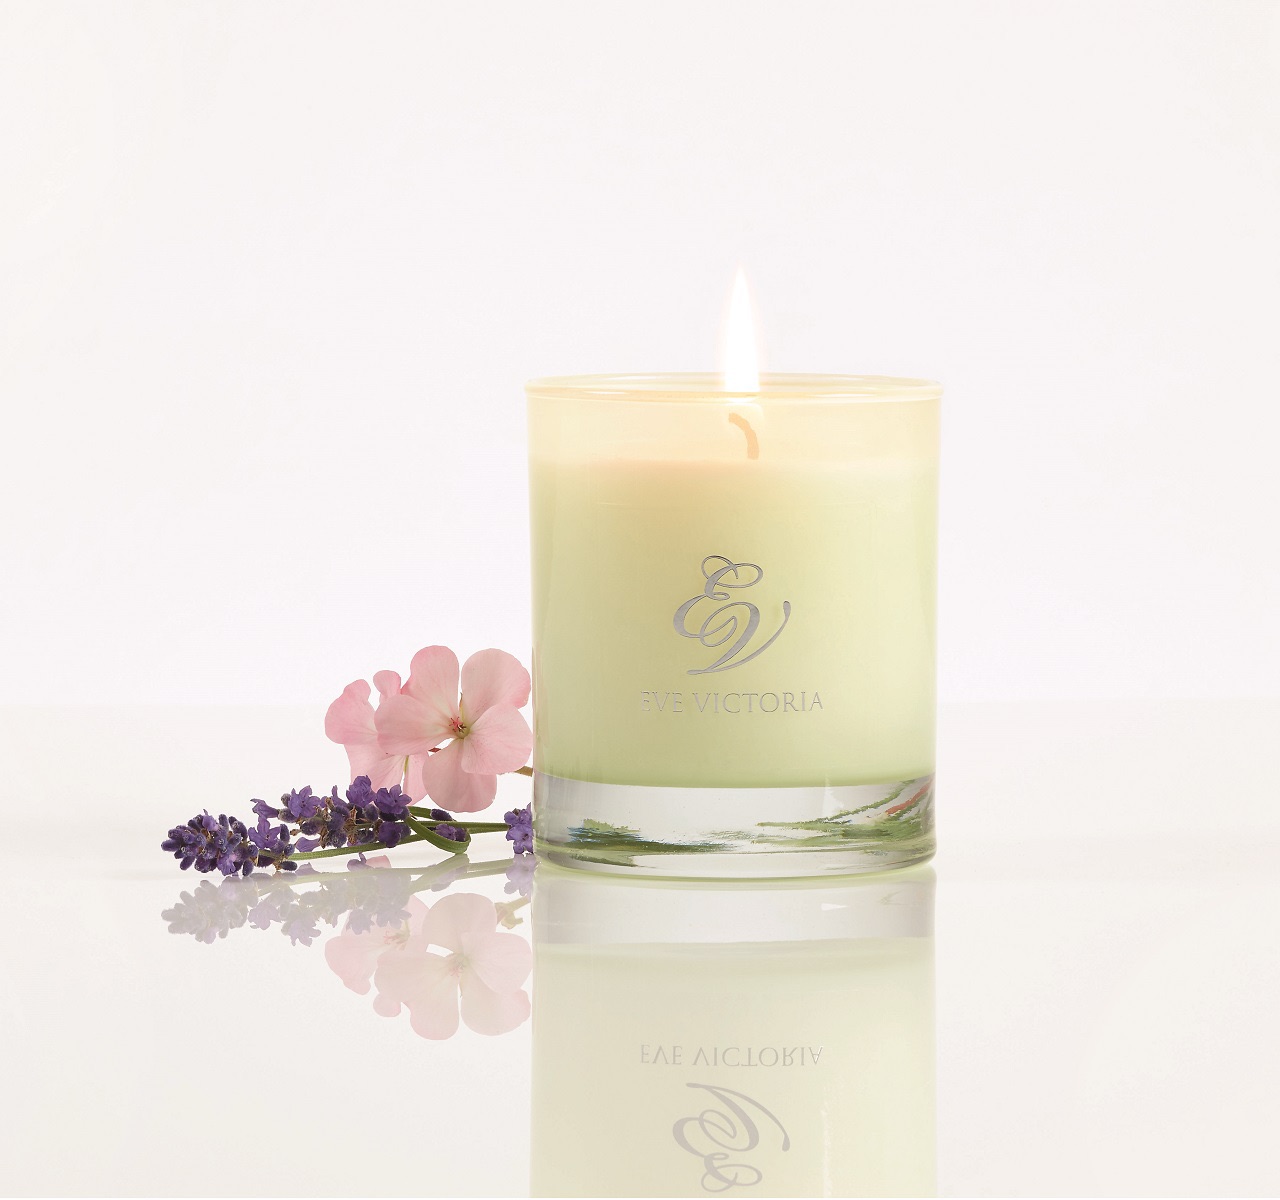 Eve Victoria Lavender & Geranium Candle